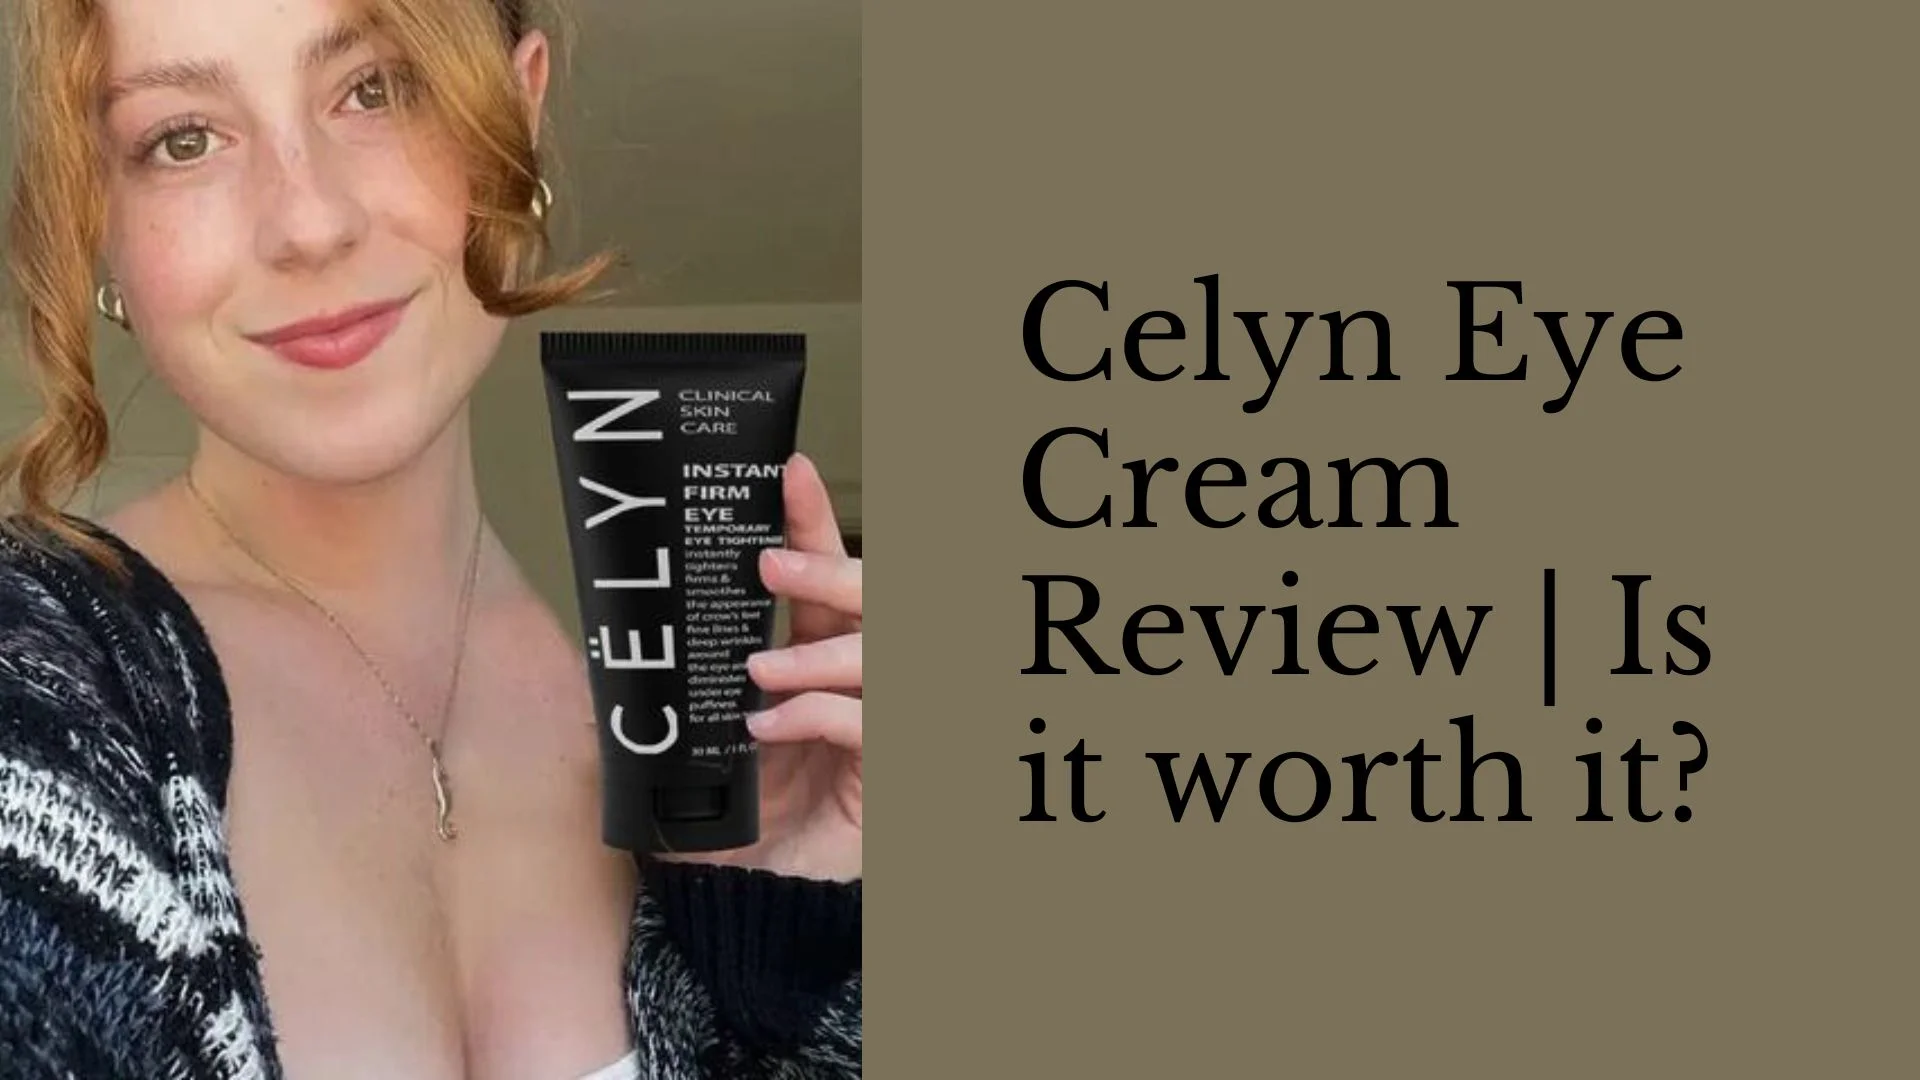 Celyn Eye Cream Review Is it worth it